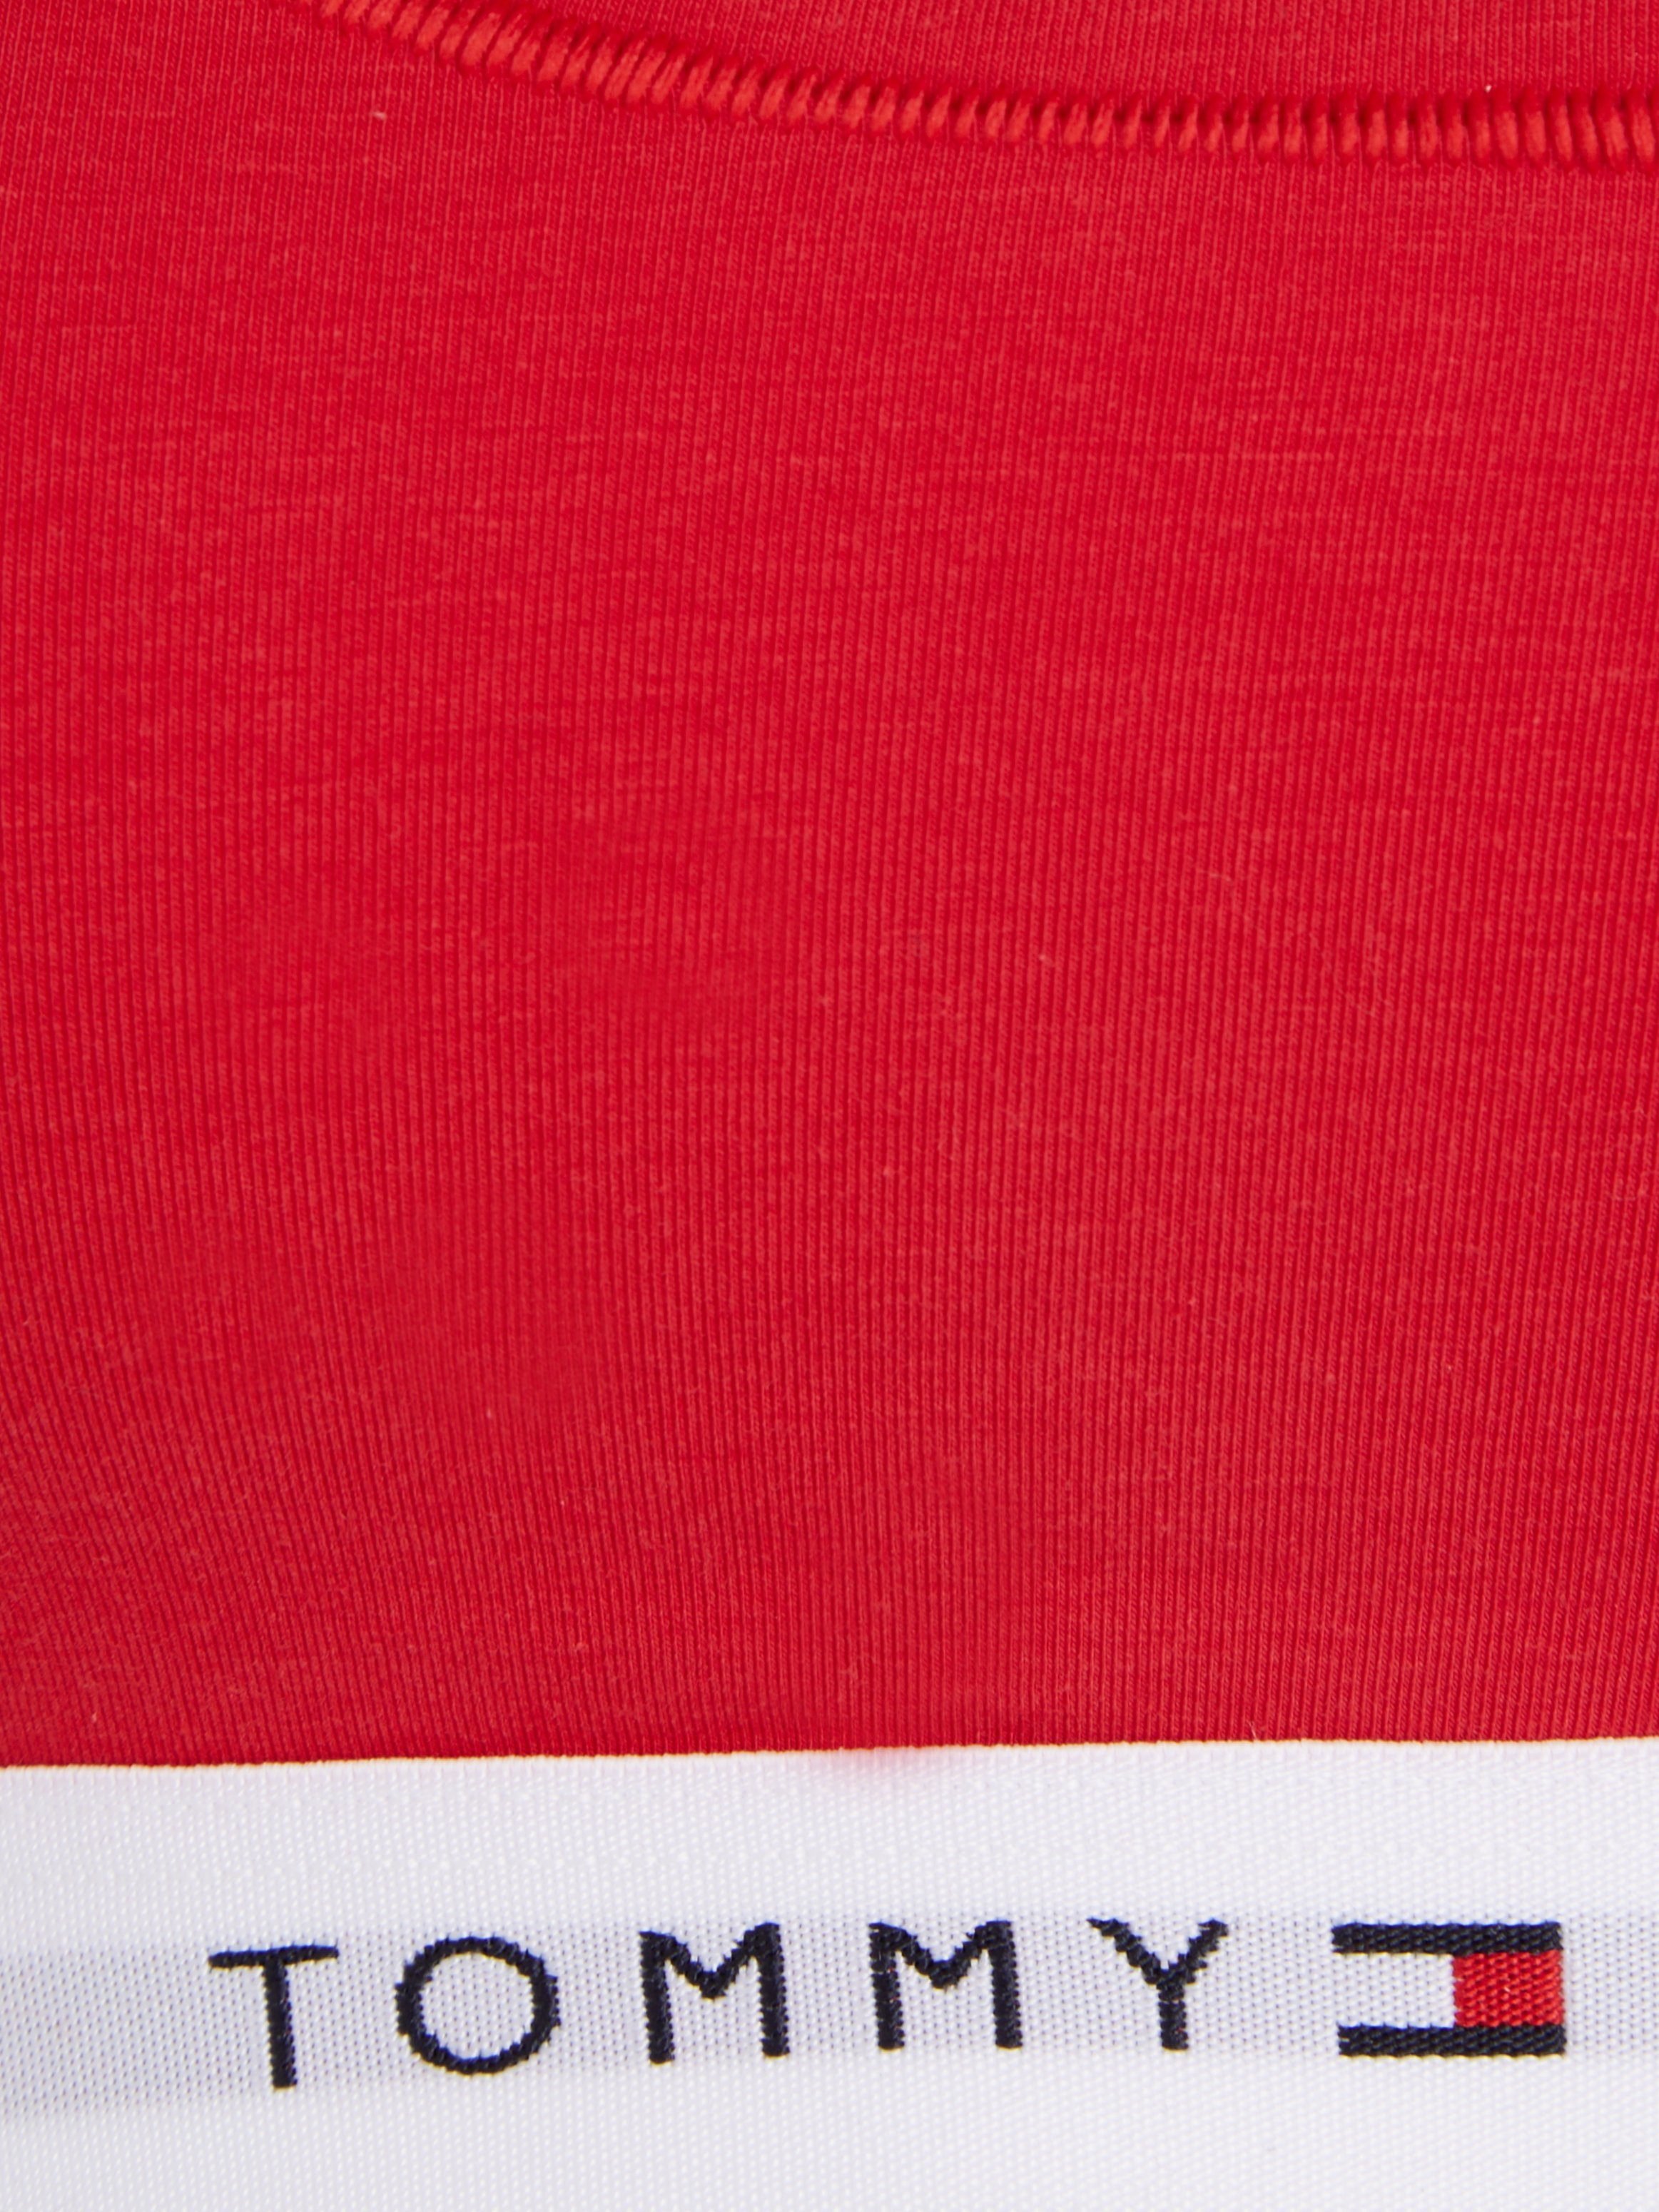 Tommy Hilfiger auf Underwear Unterbrustband Red Sport-Bustier Schriftzügen Primary dem Tommy Hilfiger mit